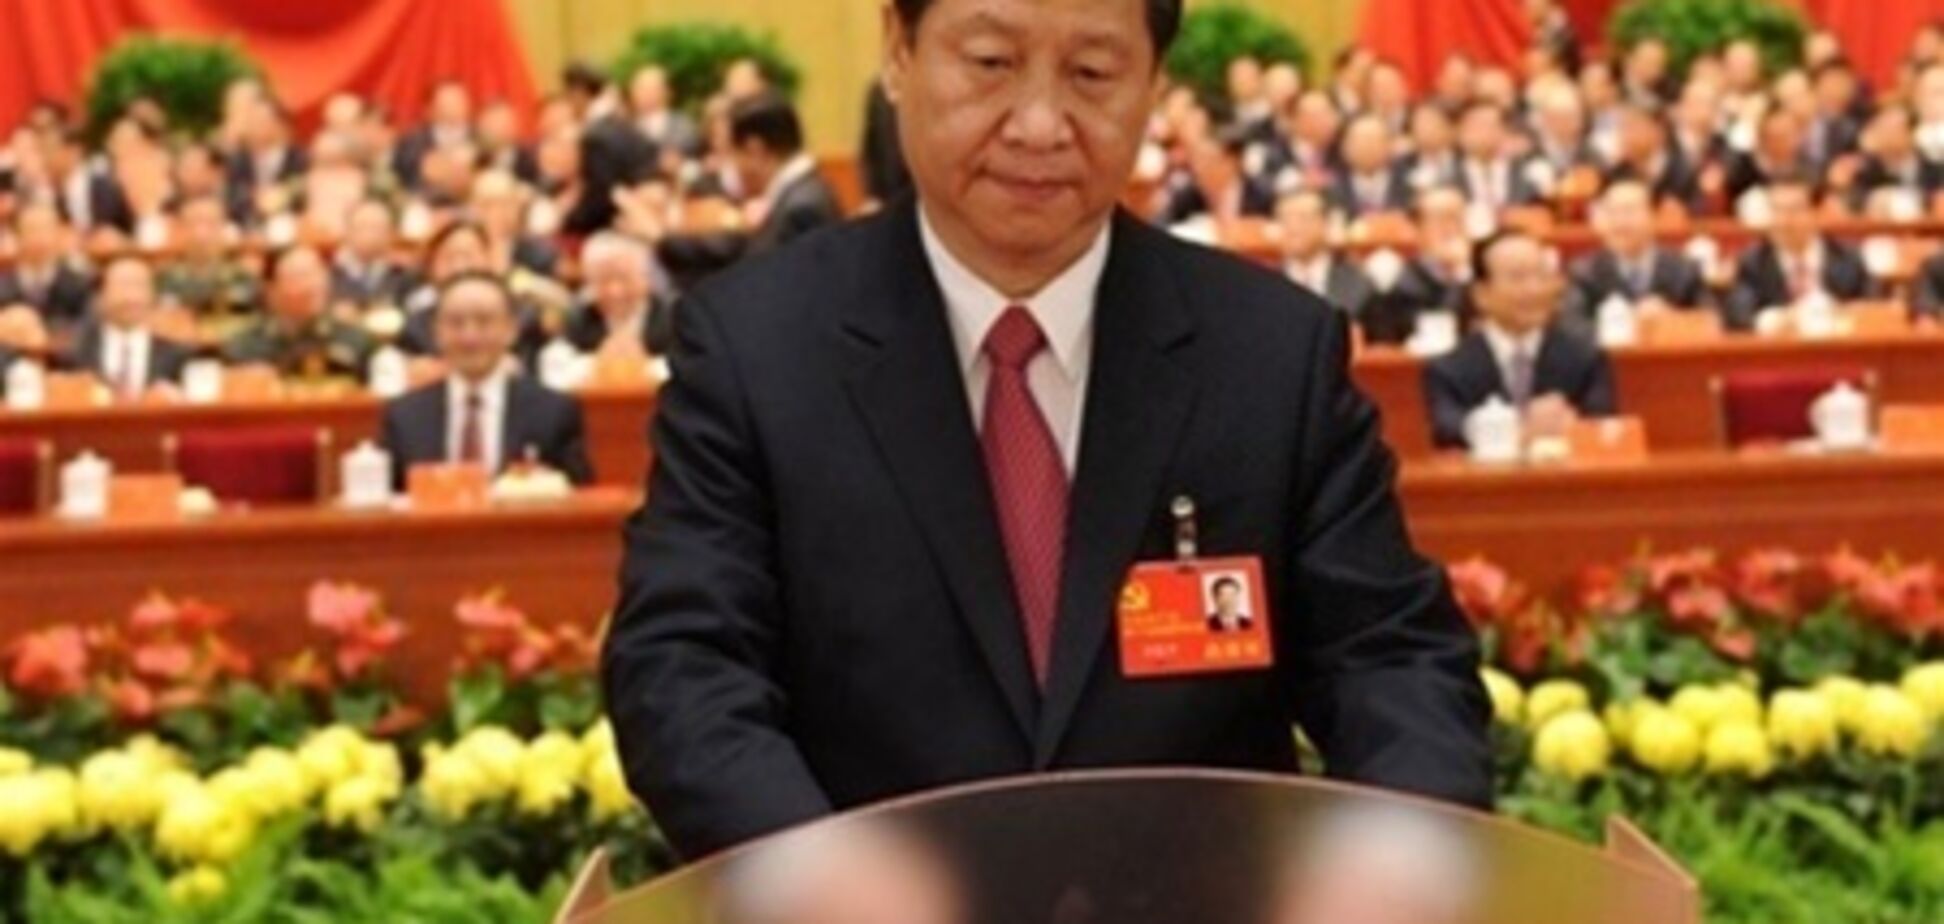 Си Цзиньпин обещает китайцам новый стиль управления. Видео